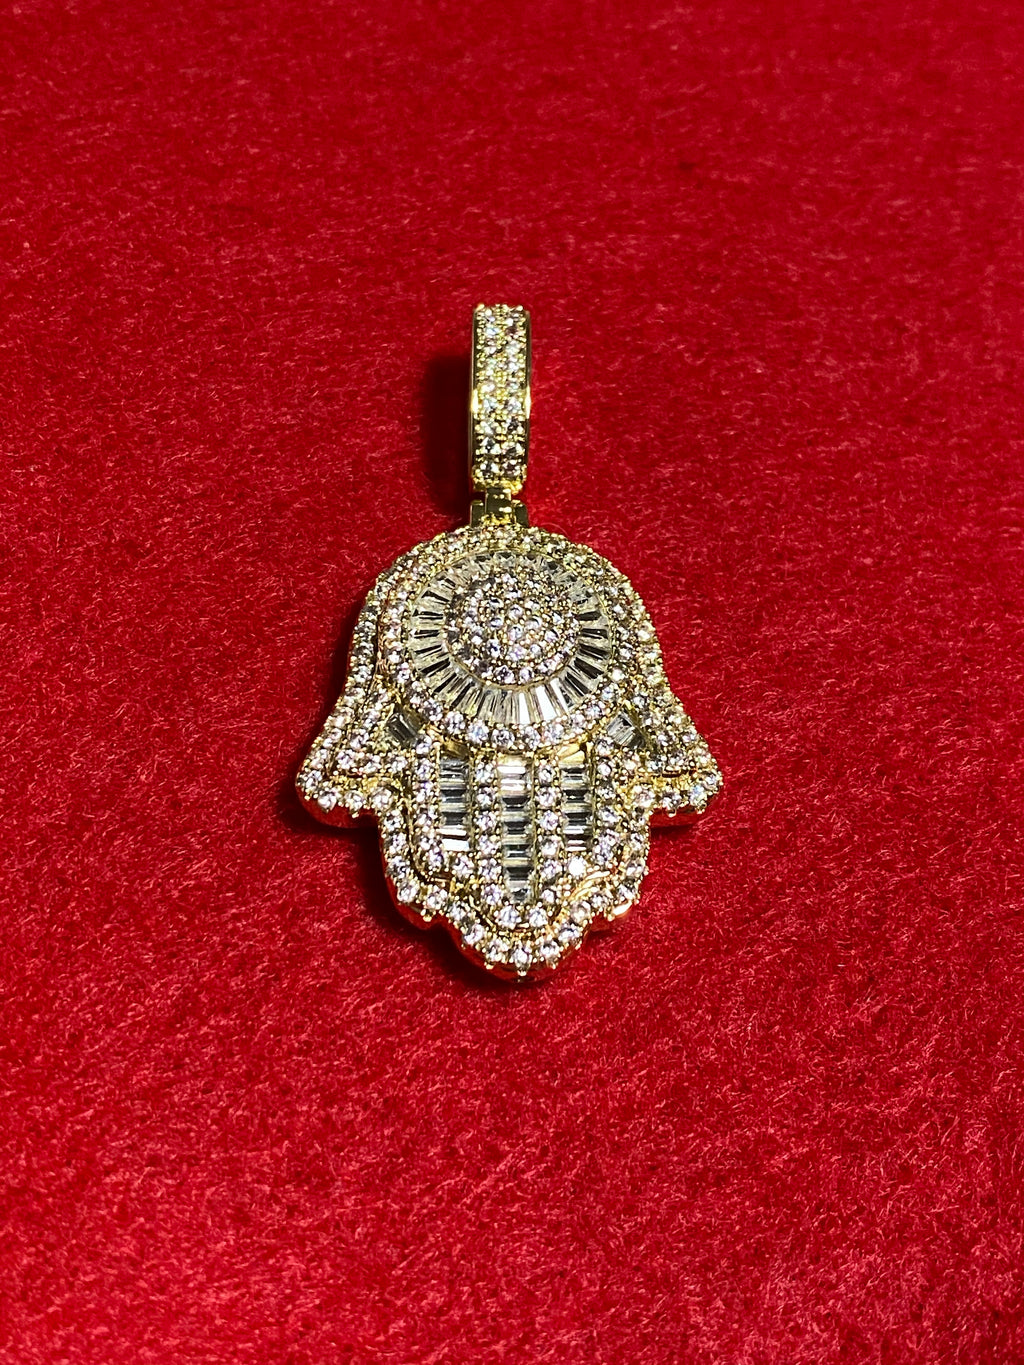 Hamsa pendant and chain